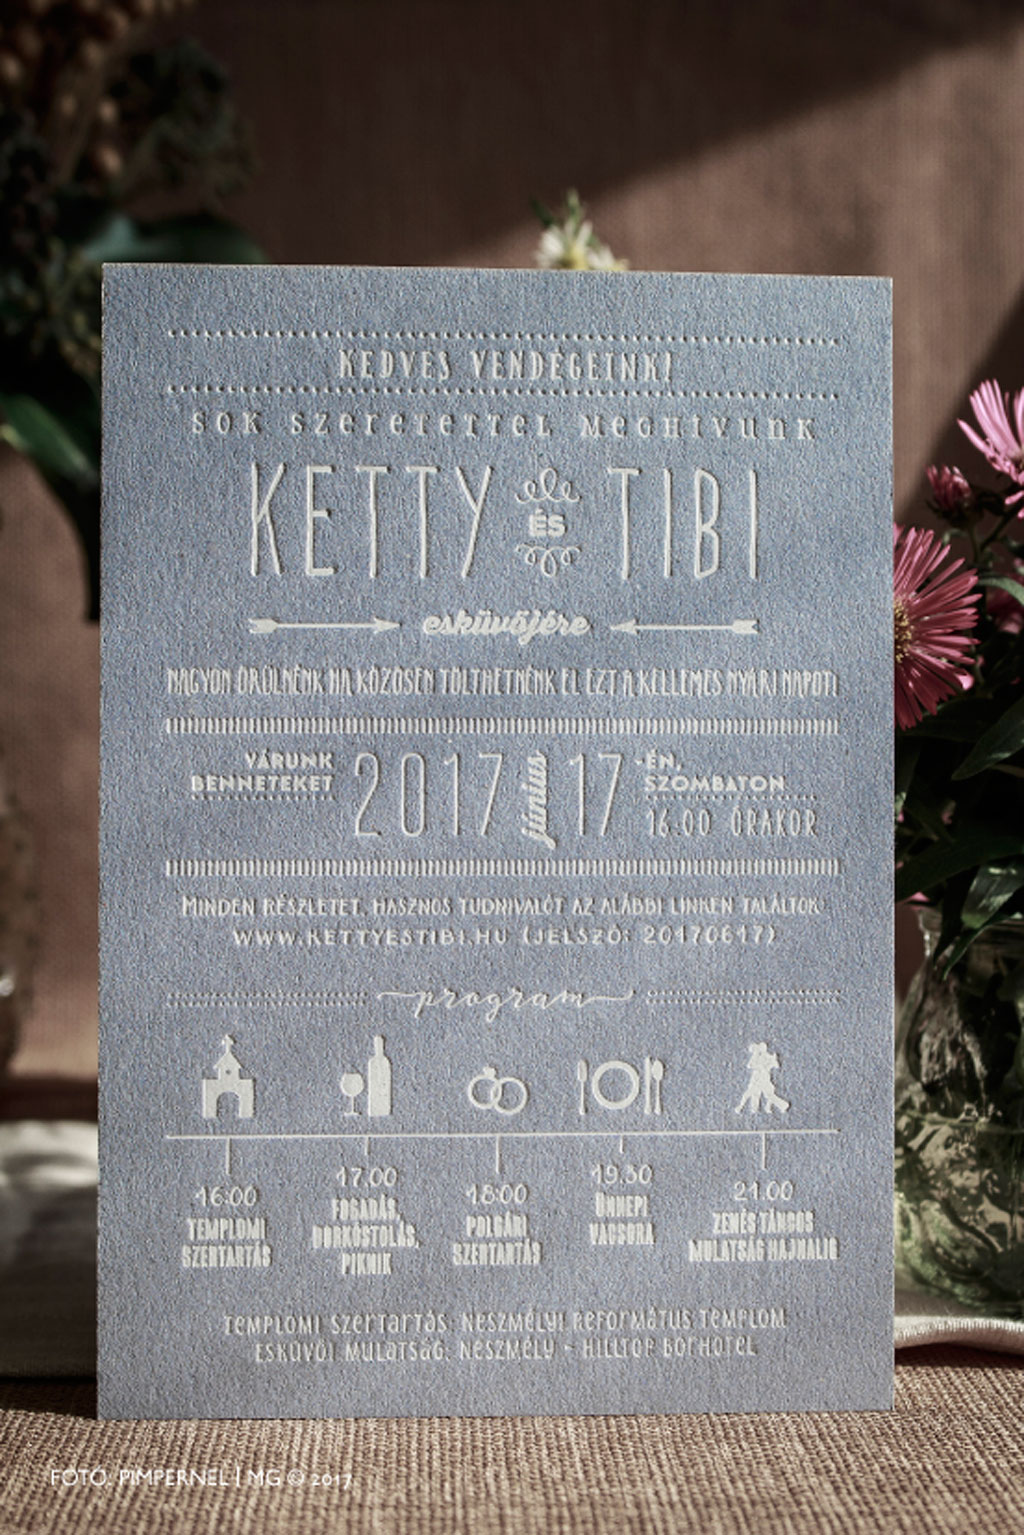 Ketty és Tibi kék lemezre nyomtatott egyedi Cool Style meghívója